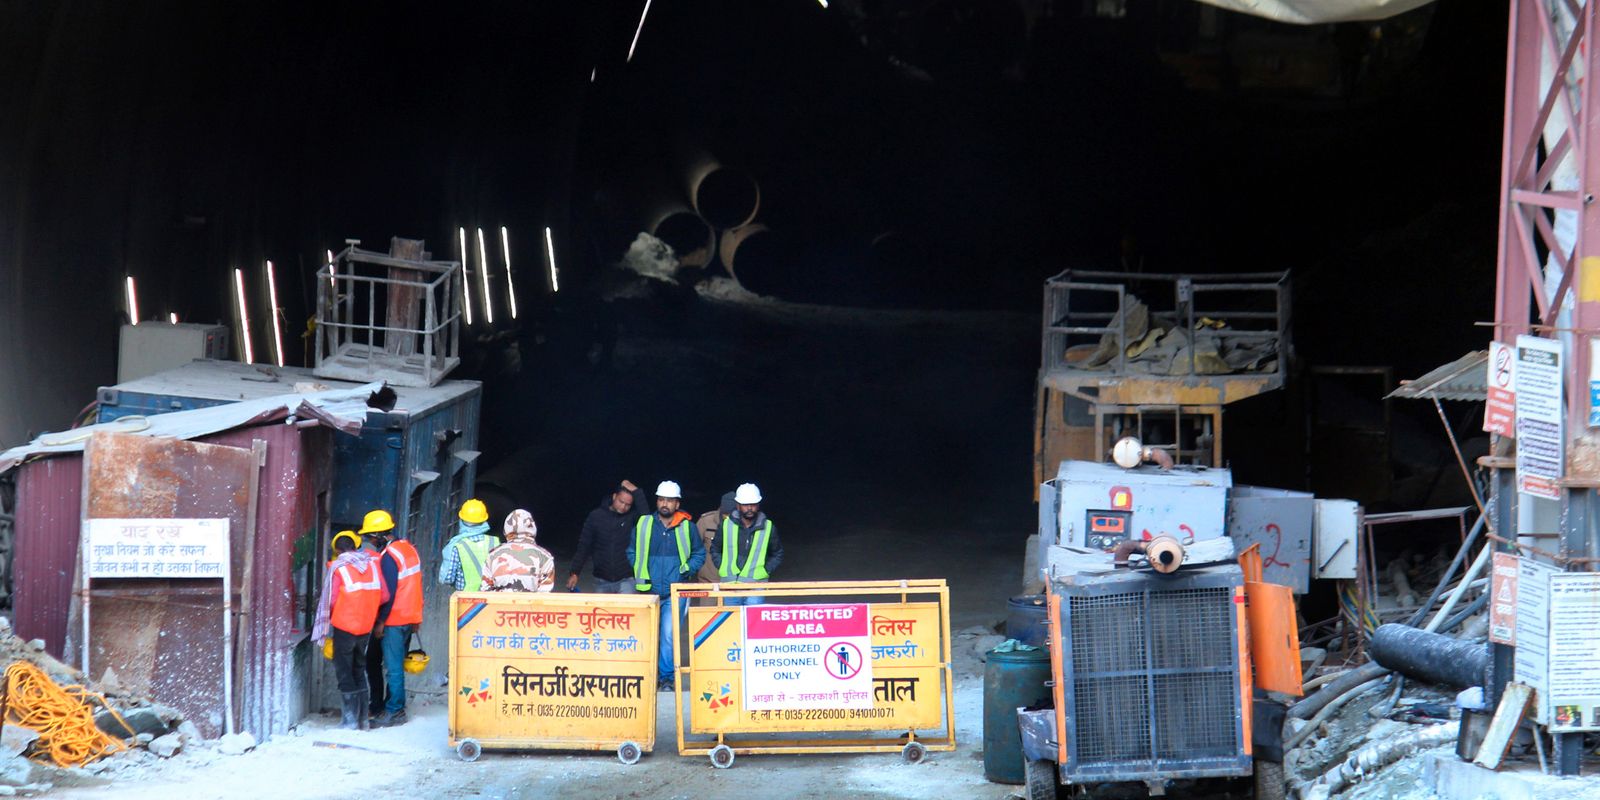 genombrott vid tunnelraset – arbetarna ska evakueras